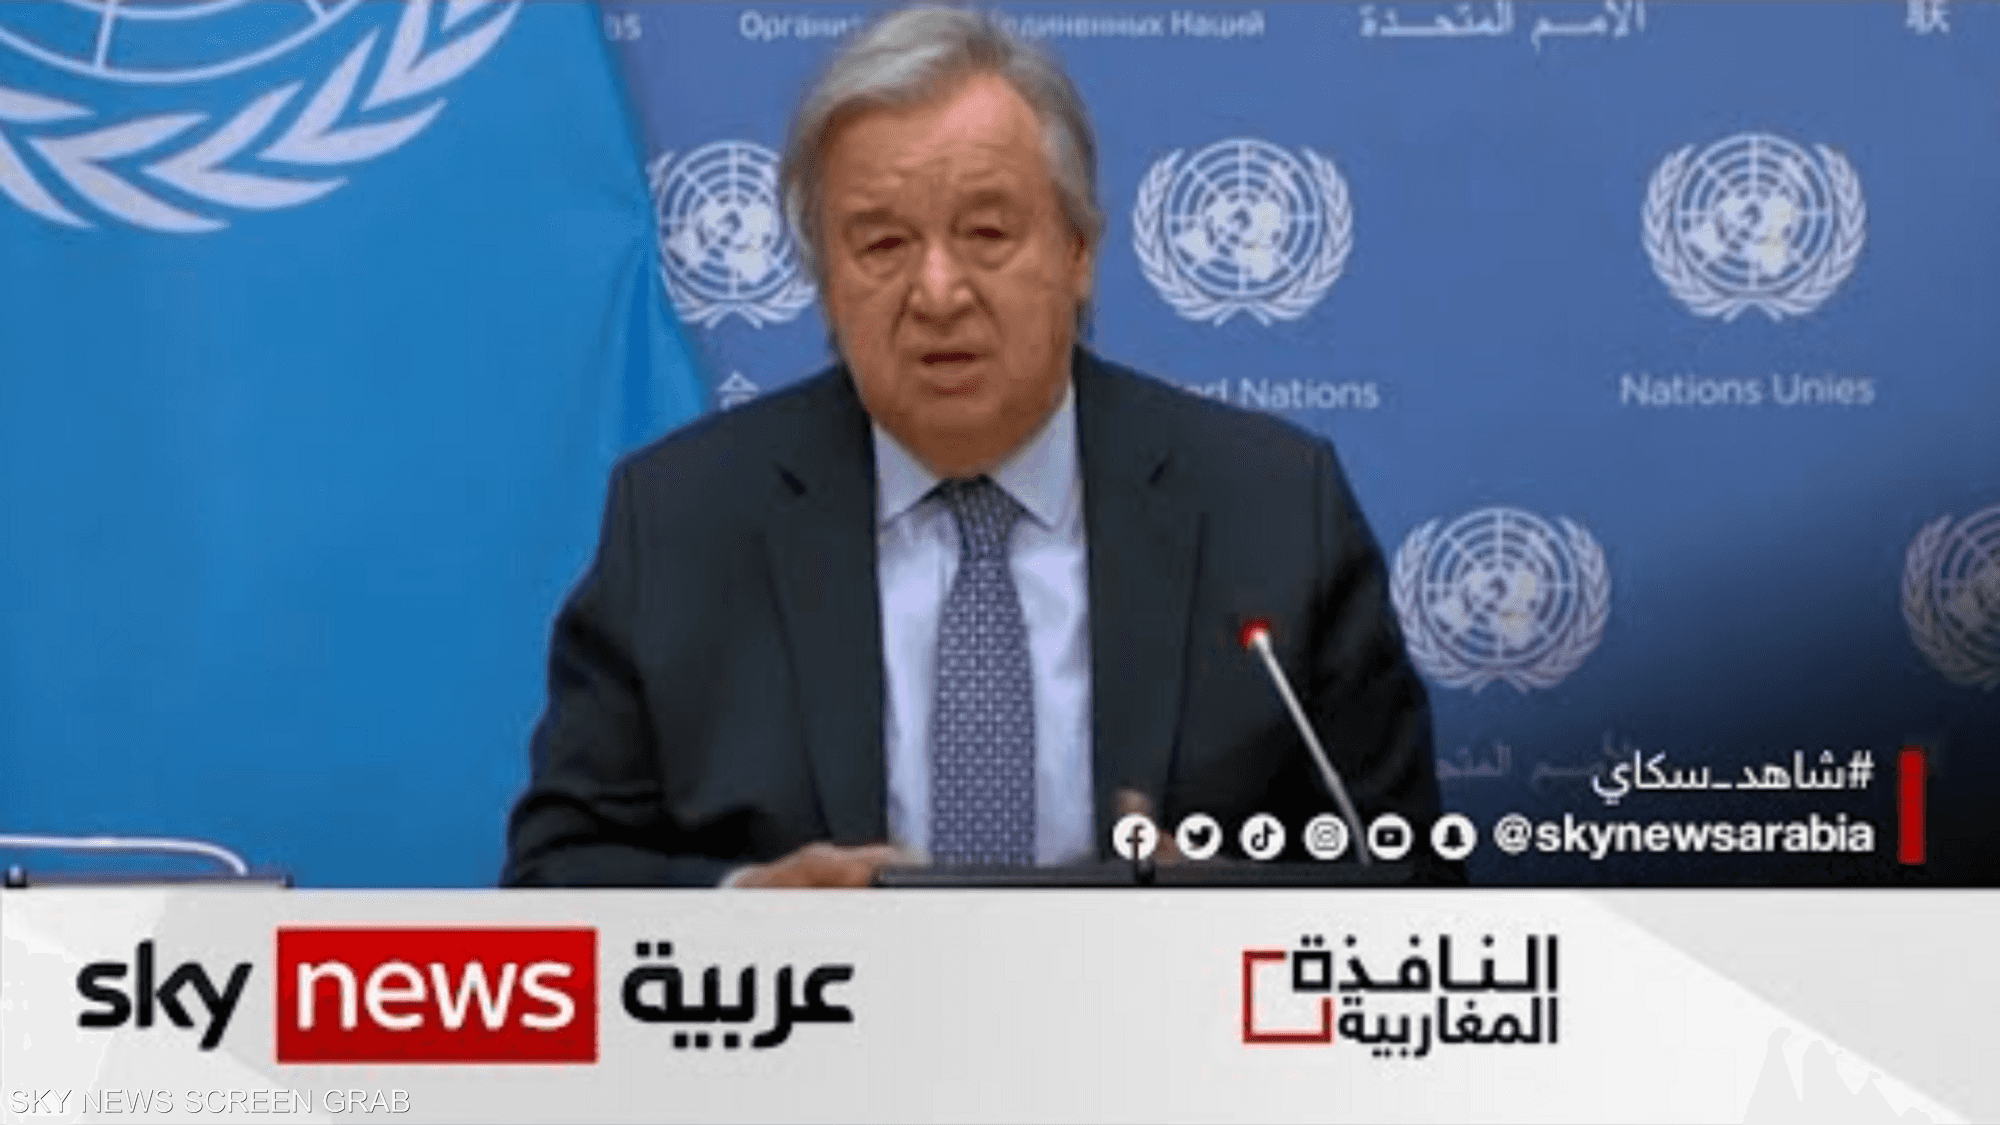 الأمم المتحدة تنتقد غياب دعم بعثة حفظ السلام بمالي